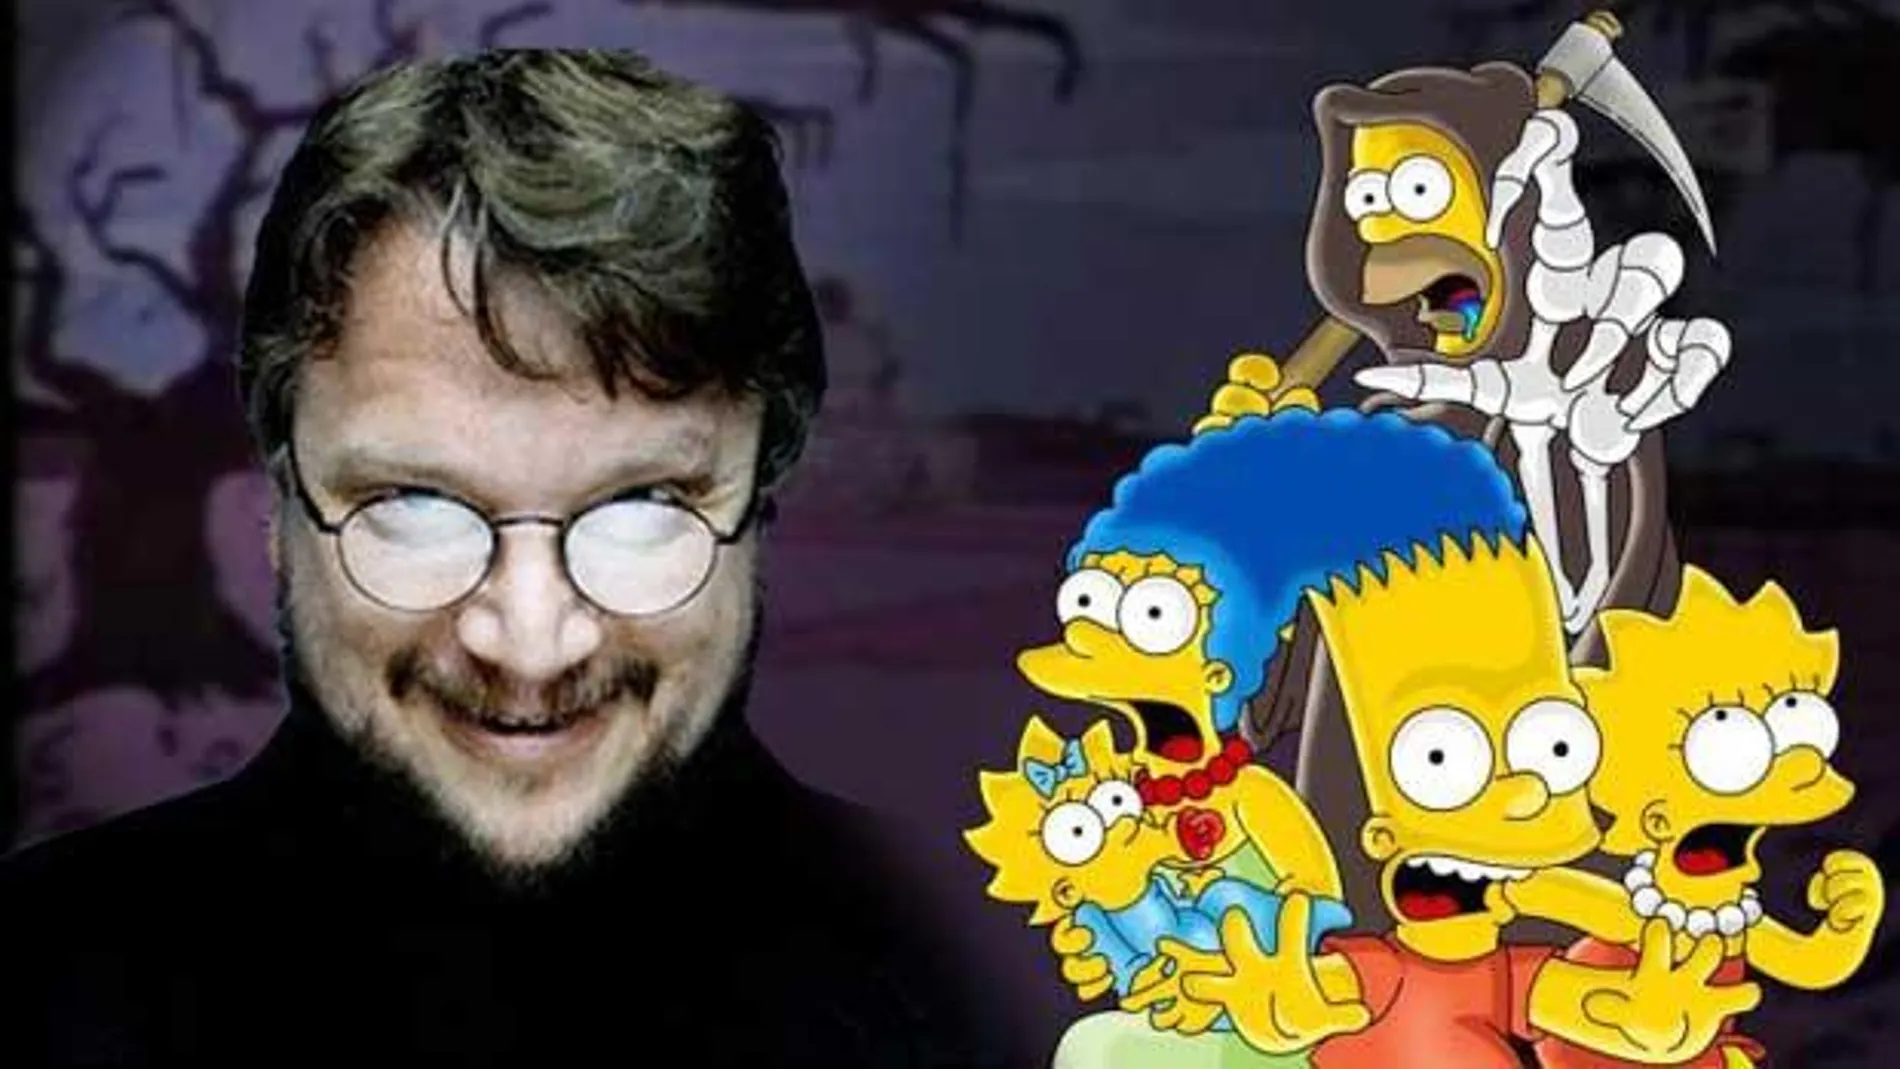 Guillermo del Toro escribirá y dirigirá las tres primeras historias que estarán incluidas en el especial, la primera titulada "Oh The Places You'll D'oh", donde Homer esparcirá la locura en Springfield emulando al famoso Gato del Sombrero de Dr. Seuss.